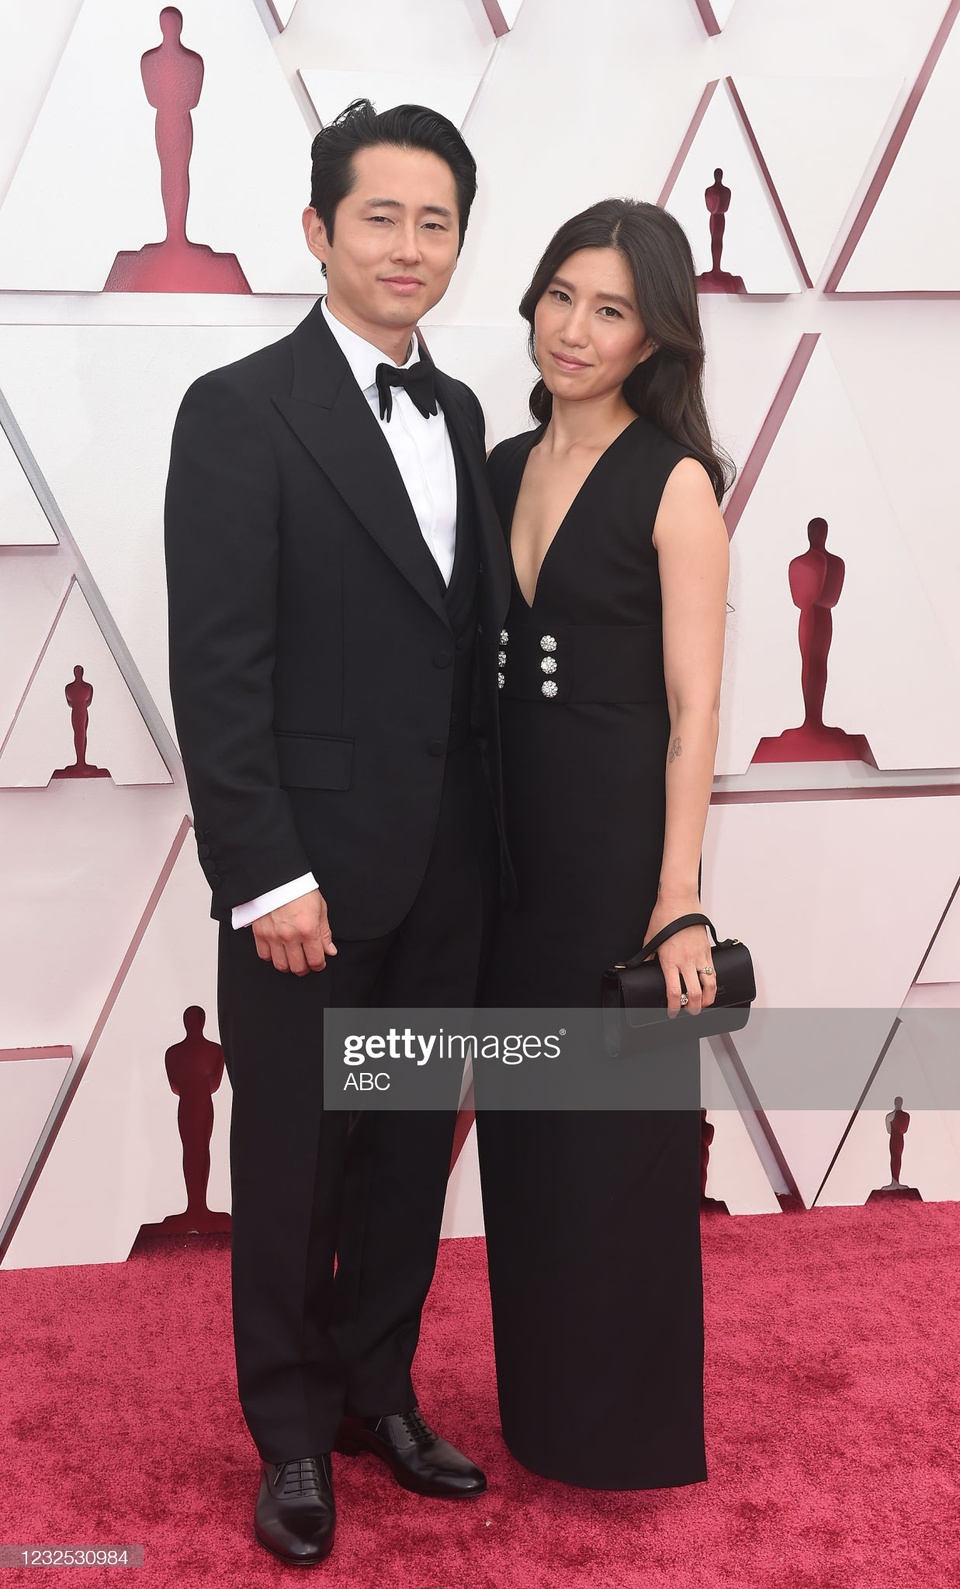 Năm nay tiếp tục là một cuộc tổng tấn công của người châu Á khi Steven Yeun được đề cử Nam diễn viên chính xuất sắc với vai diễn trong phim Minari. Trên thảm đỏ, anh còn xuất hiện cùng vợ Joanna Pak.